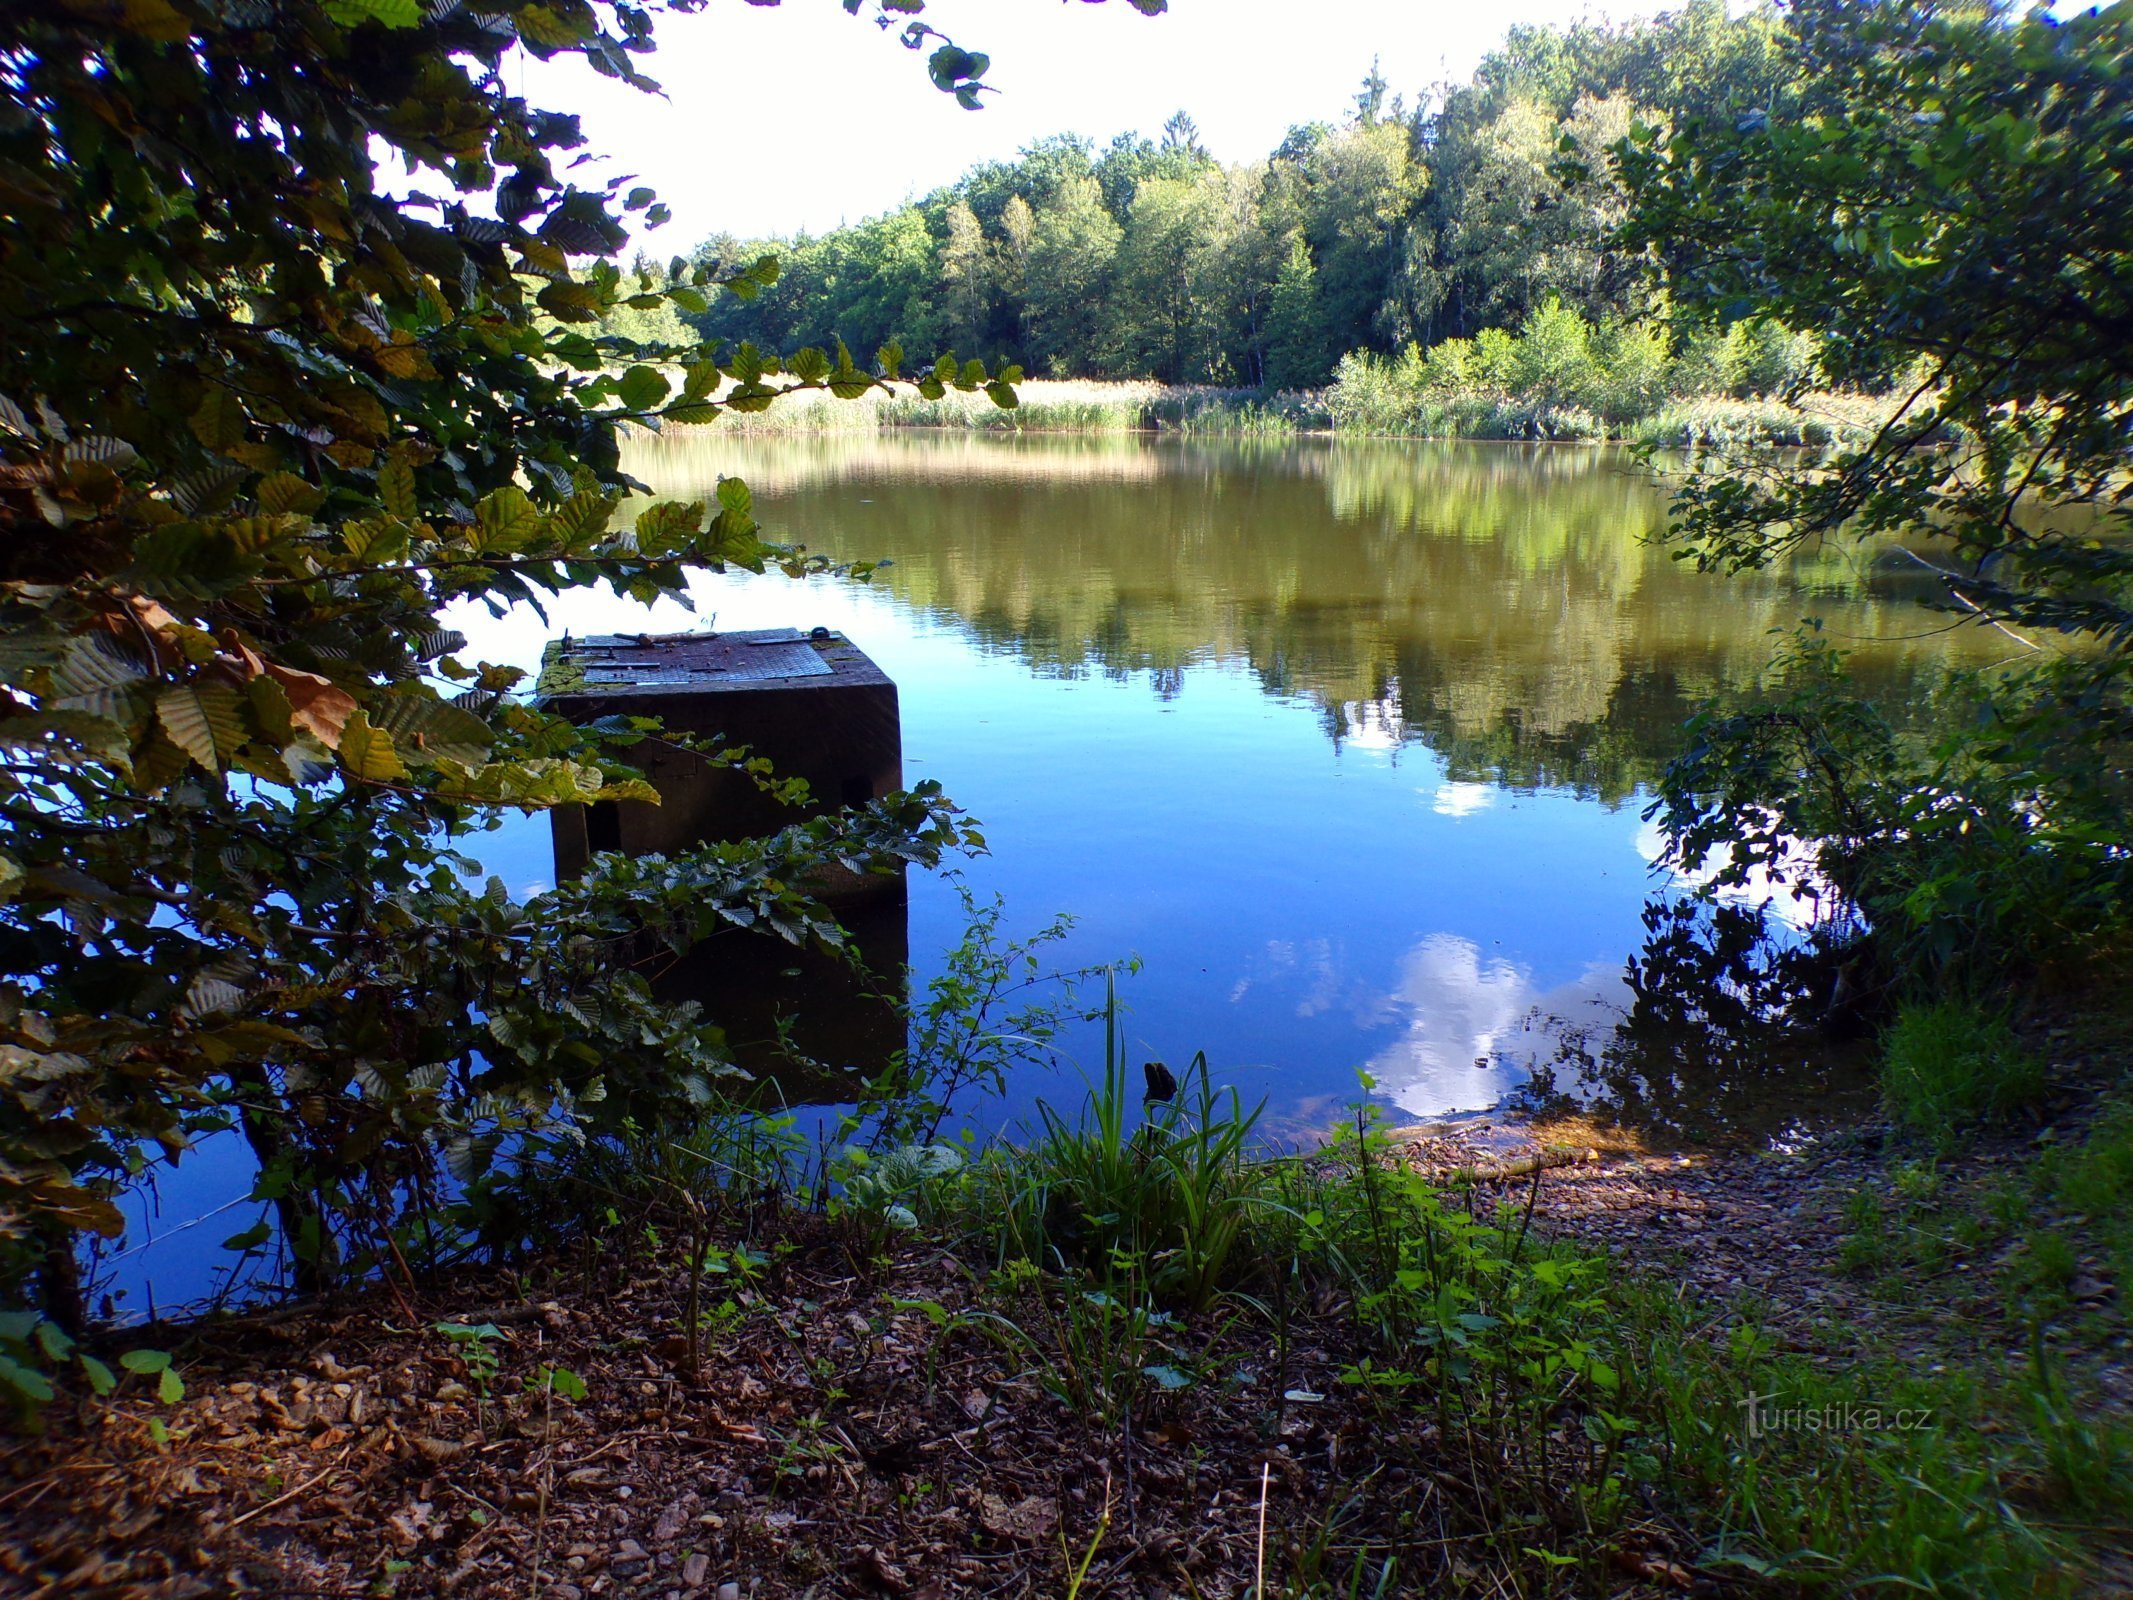 Hlinský rybník (Petrovice nad Orlicí、1.9.2022 年 XNUMX 月 XNUMX 日)